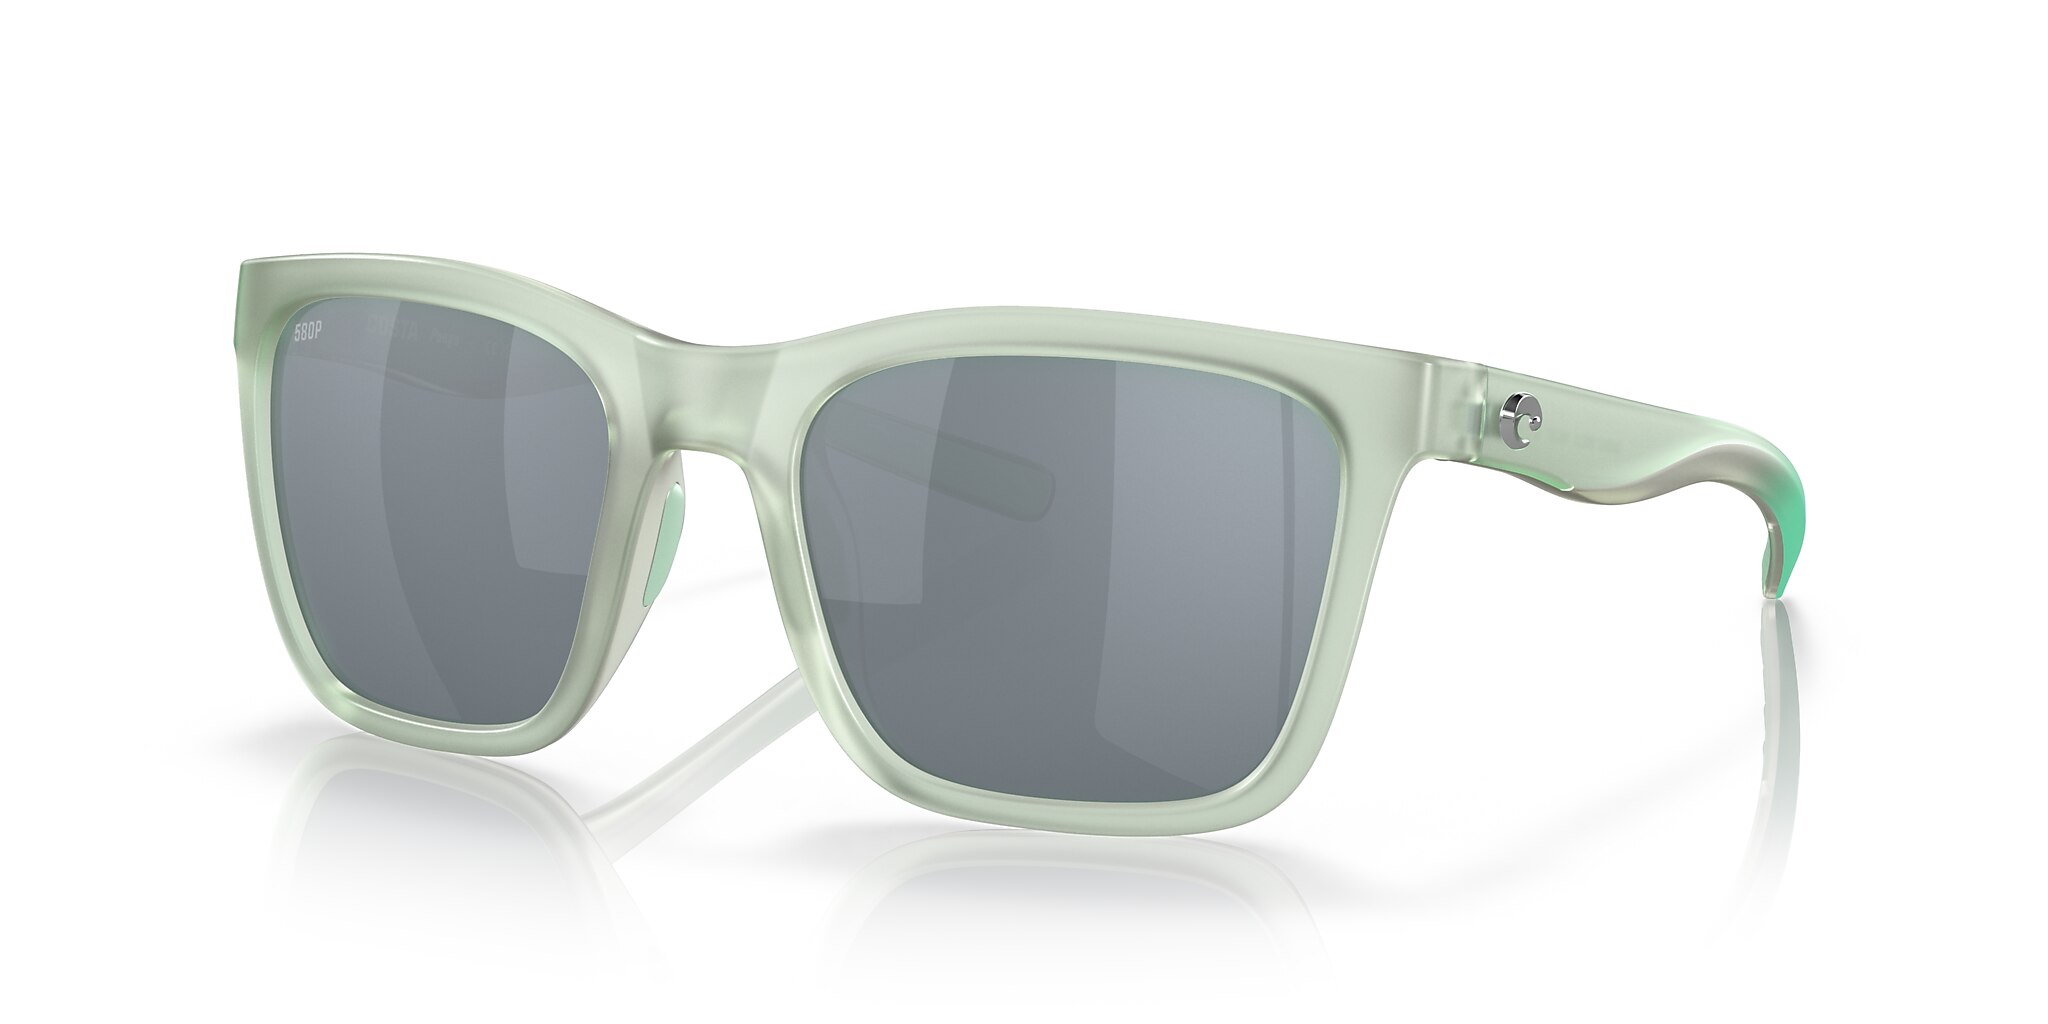 Panga Polarized Sunglasses in Gray Silver Mirror | Costa Del Mar®